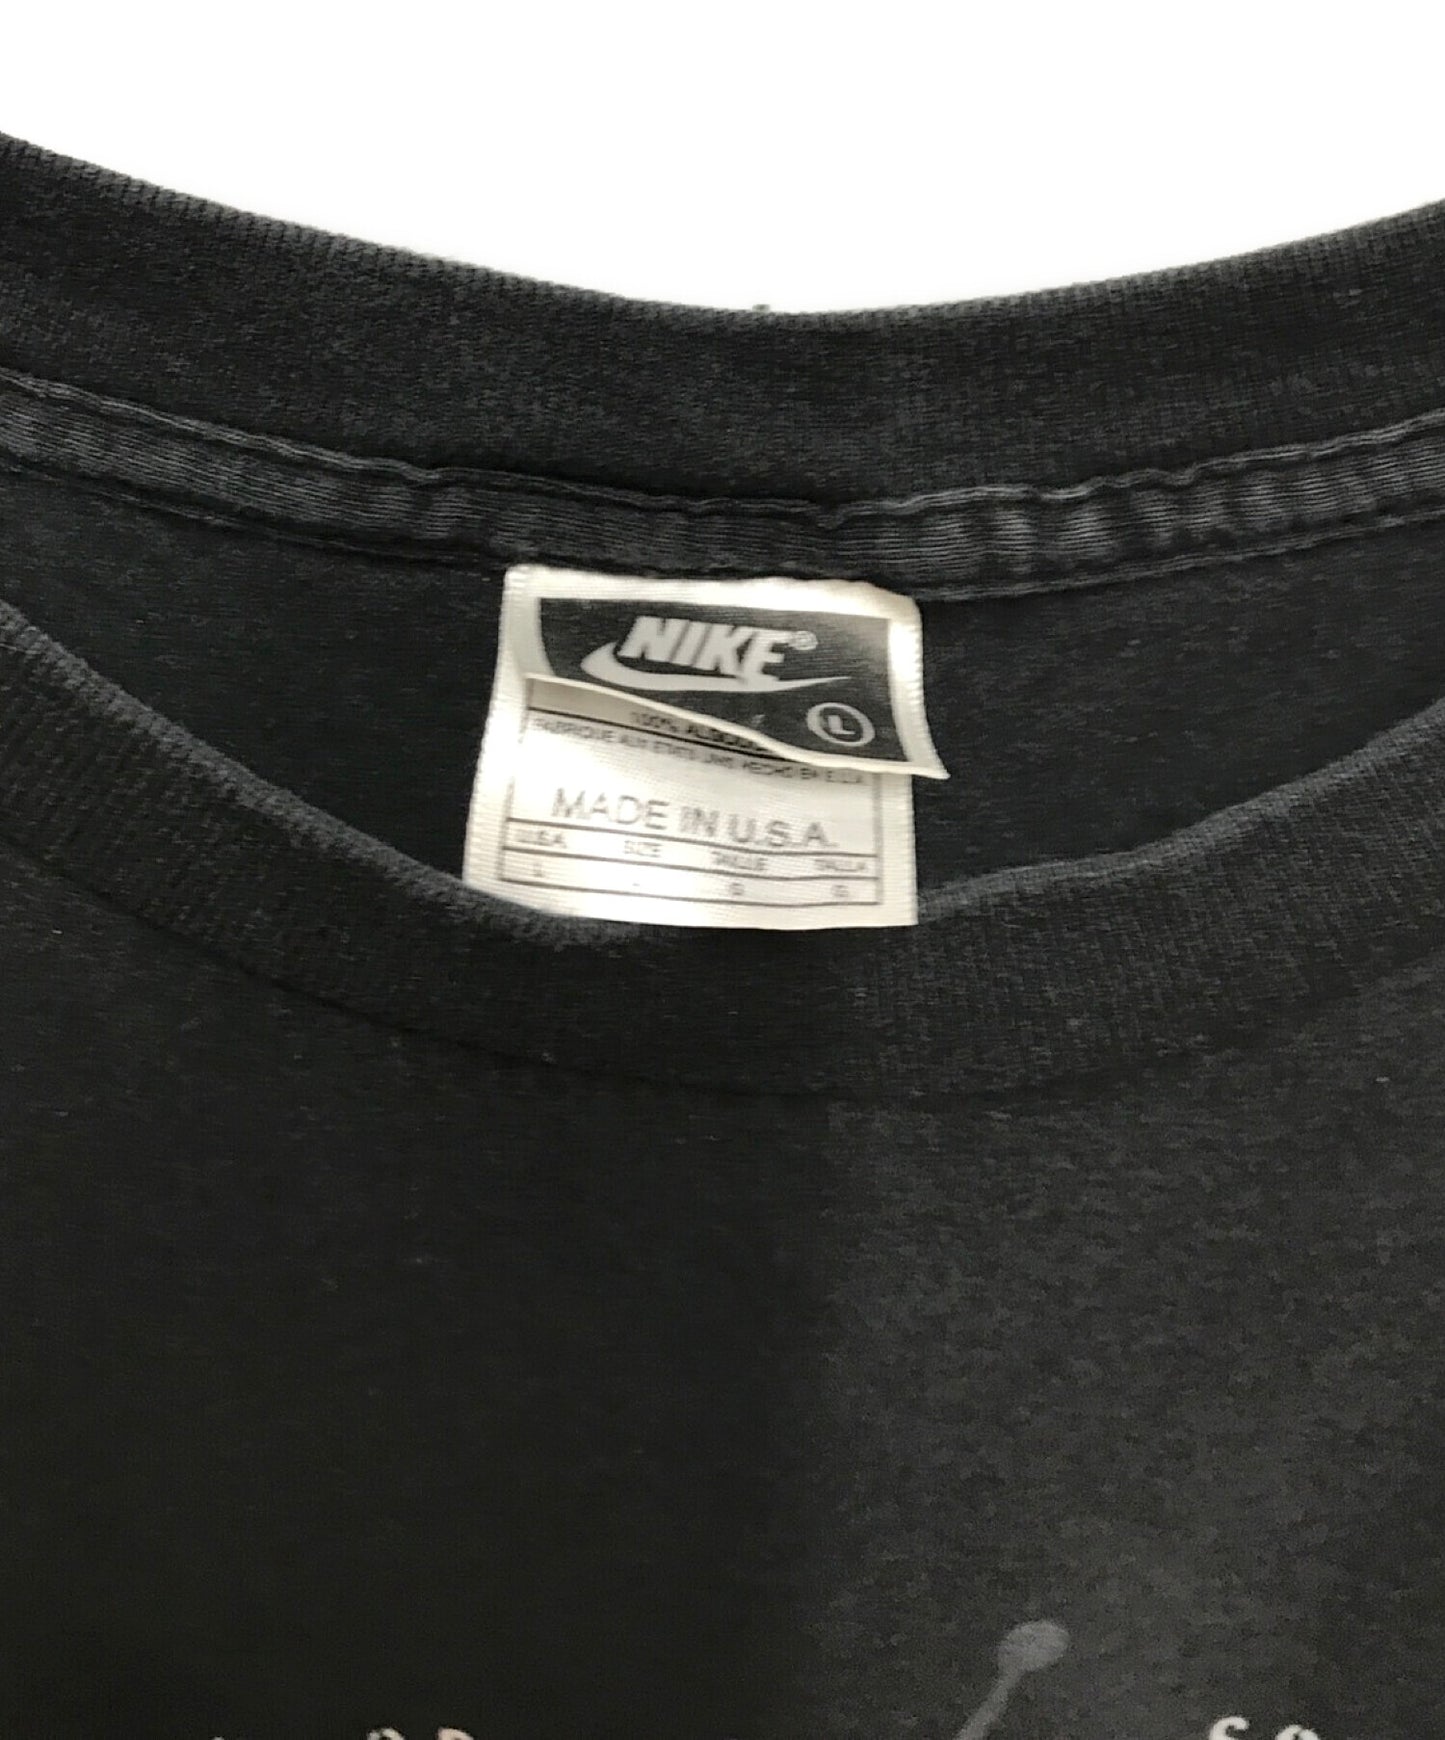 เสื้อยืด Jordan Printed ของ Nike 90